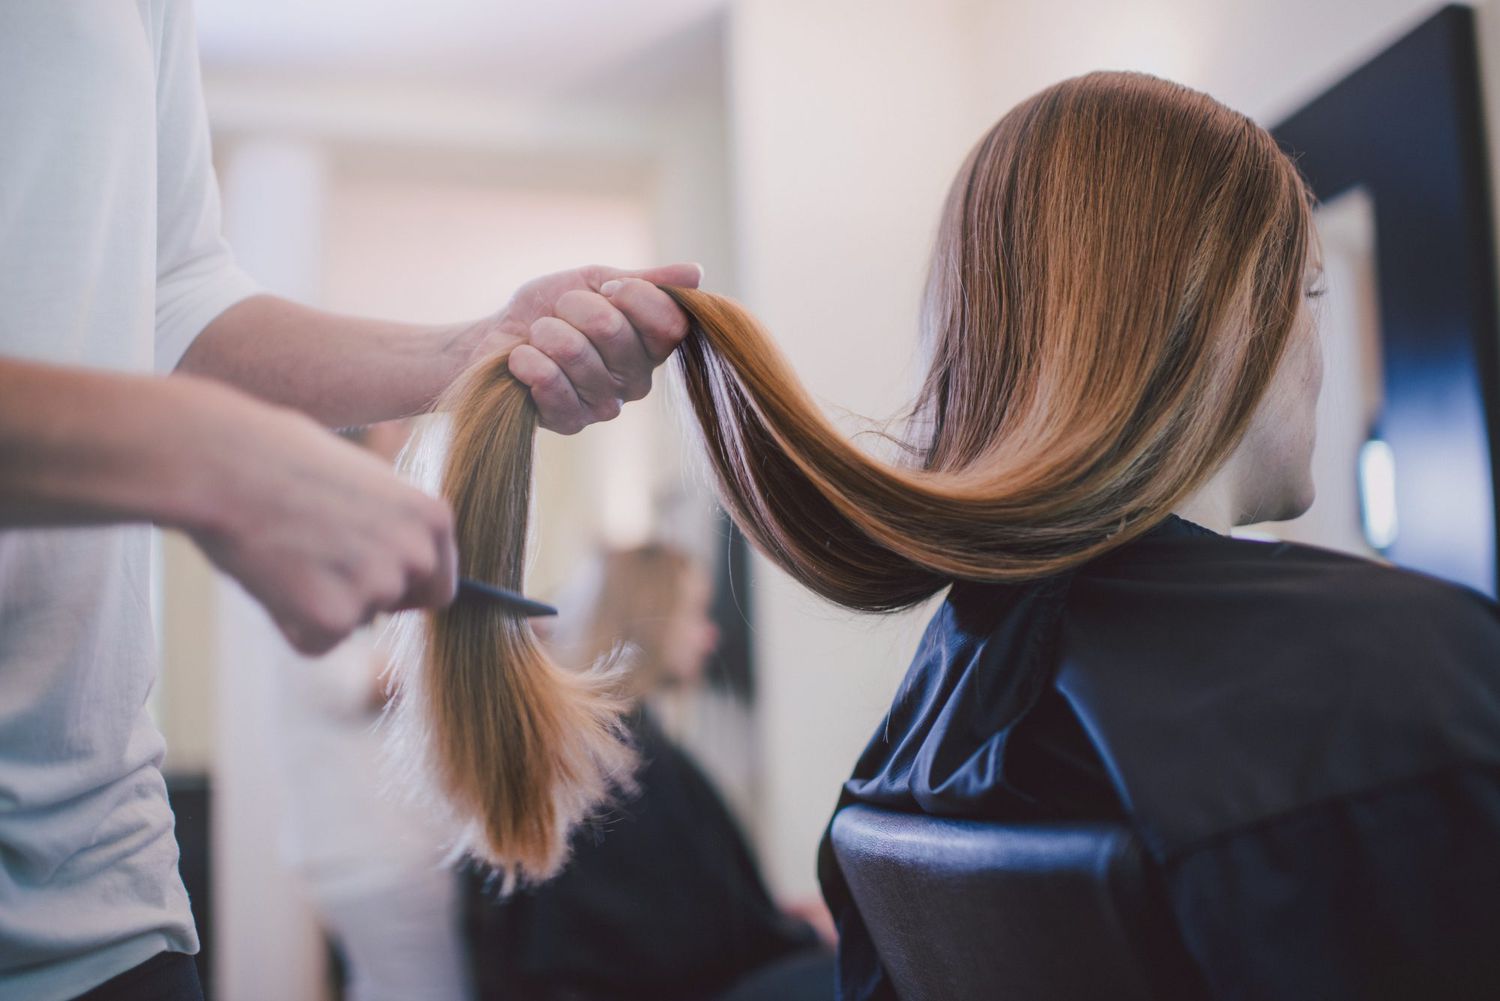 Las tendencias en cabello para triunfar este 2022 según los expertos   People en Español